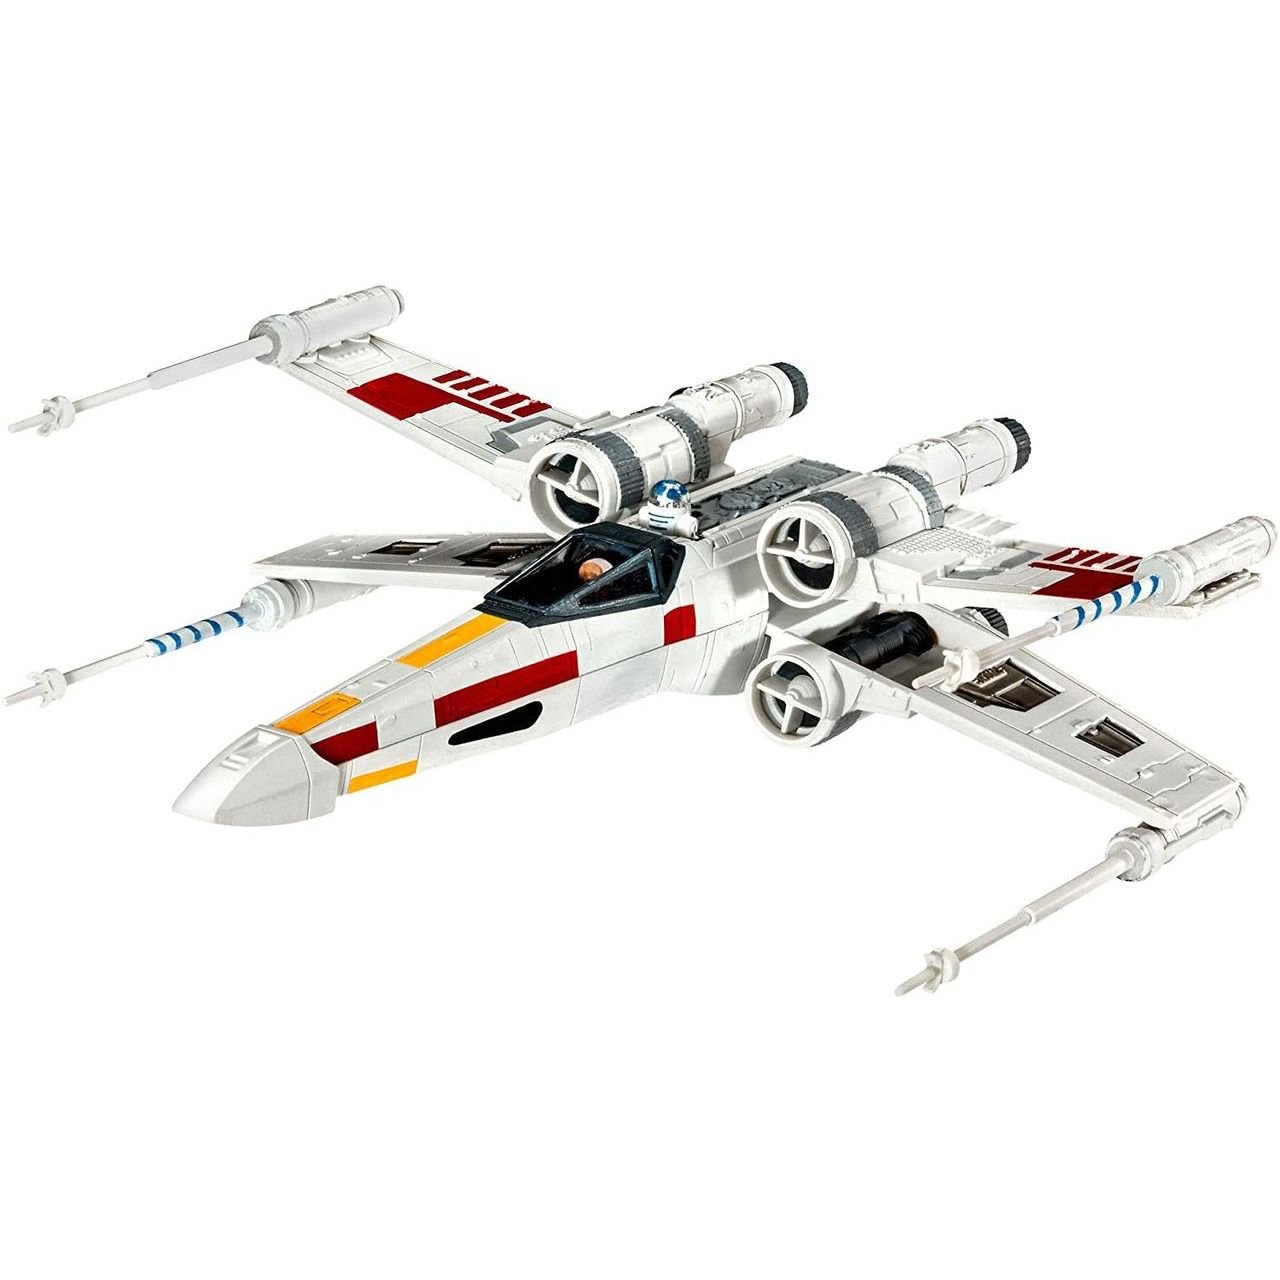 Сборная модель Revell Звездный истребитель X-крыл, 1:112, 21 деталь (RVL-63601) - фото 2